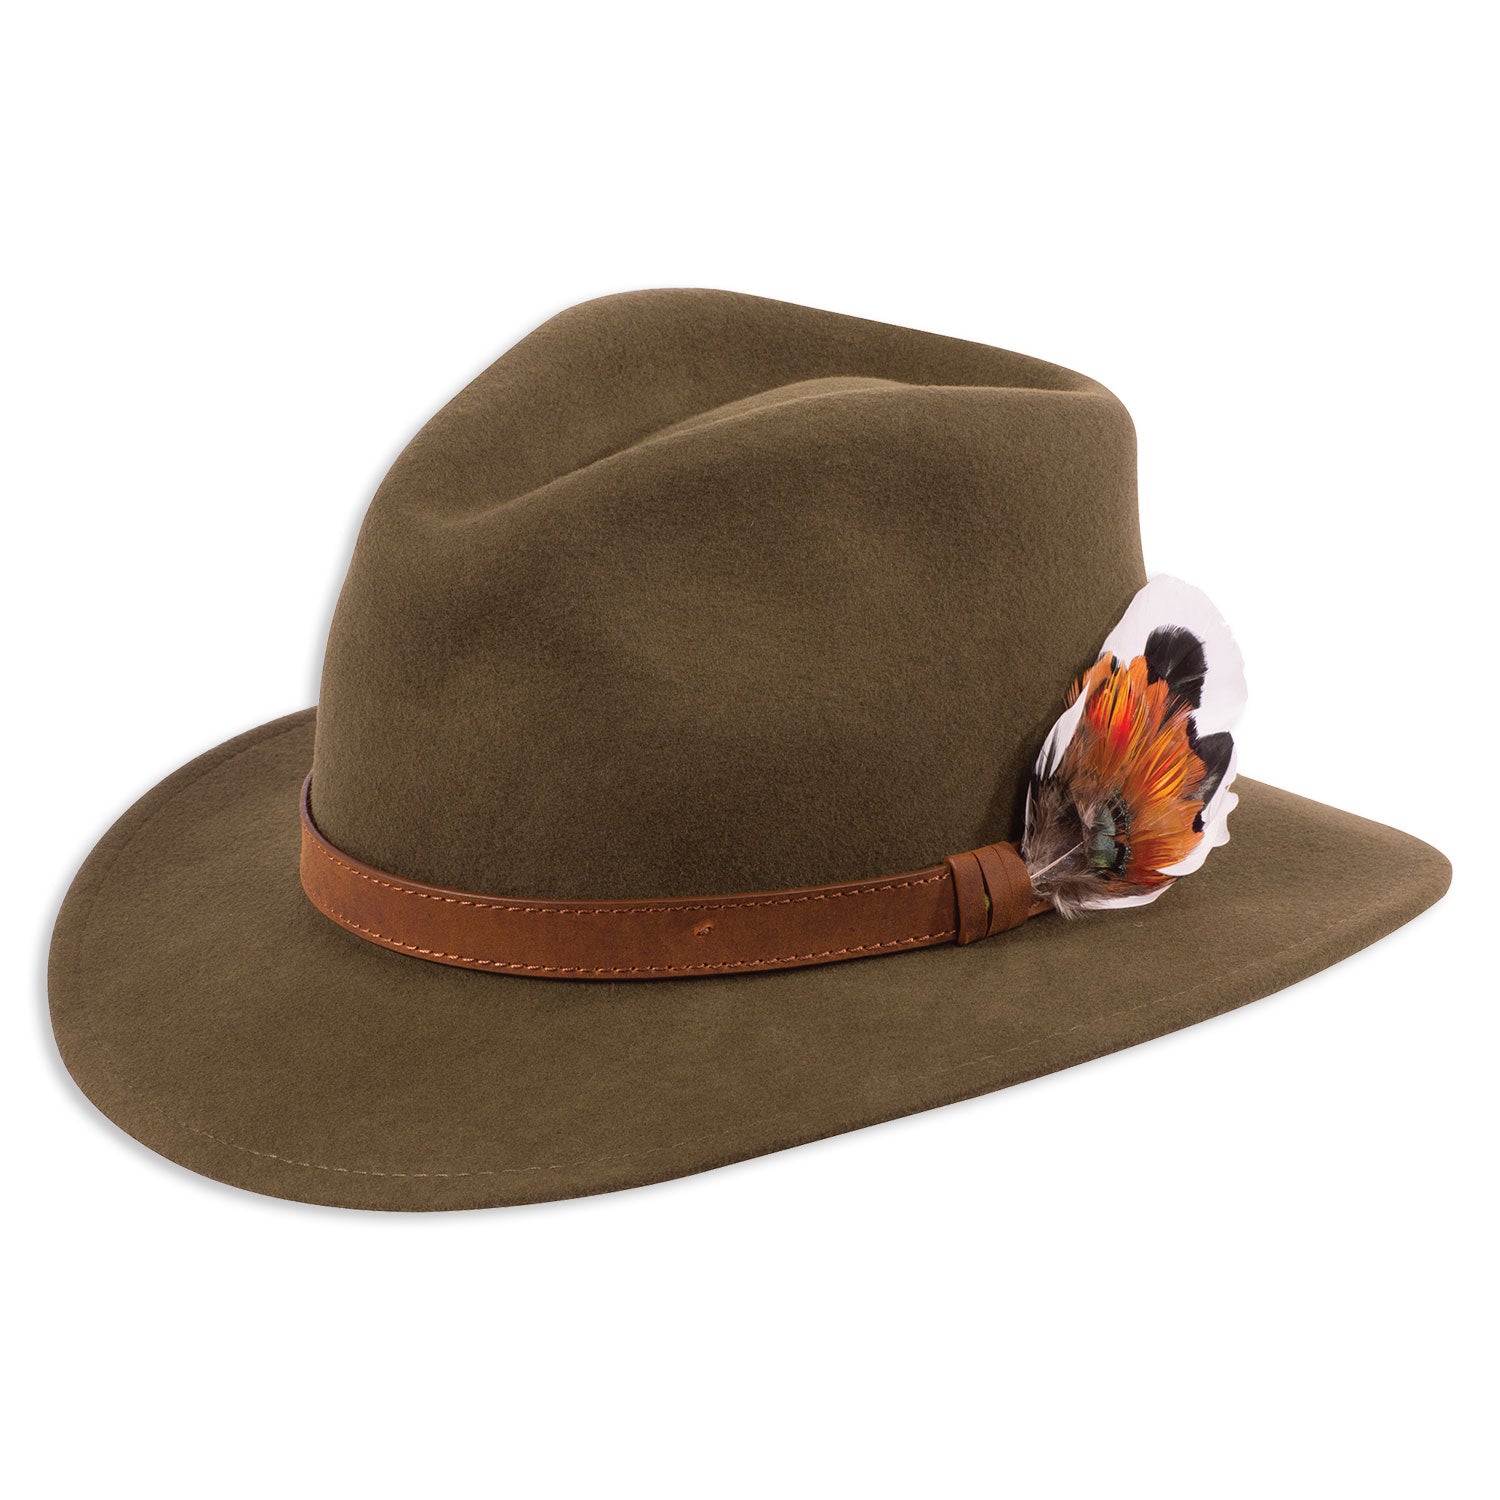 Olive Alan Paine Ladies Richmond Felt Hat  